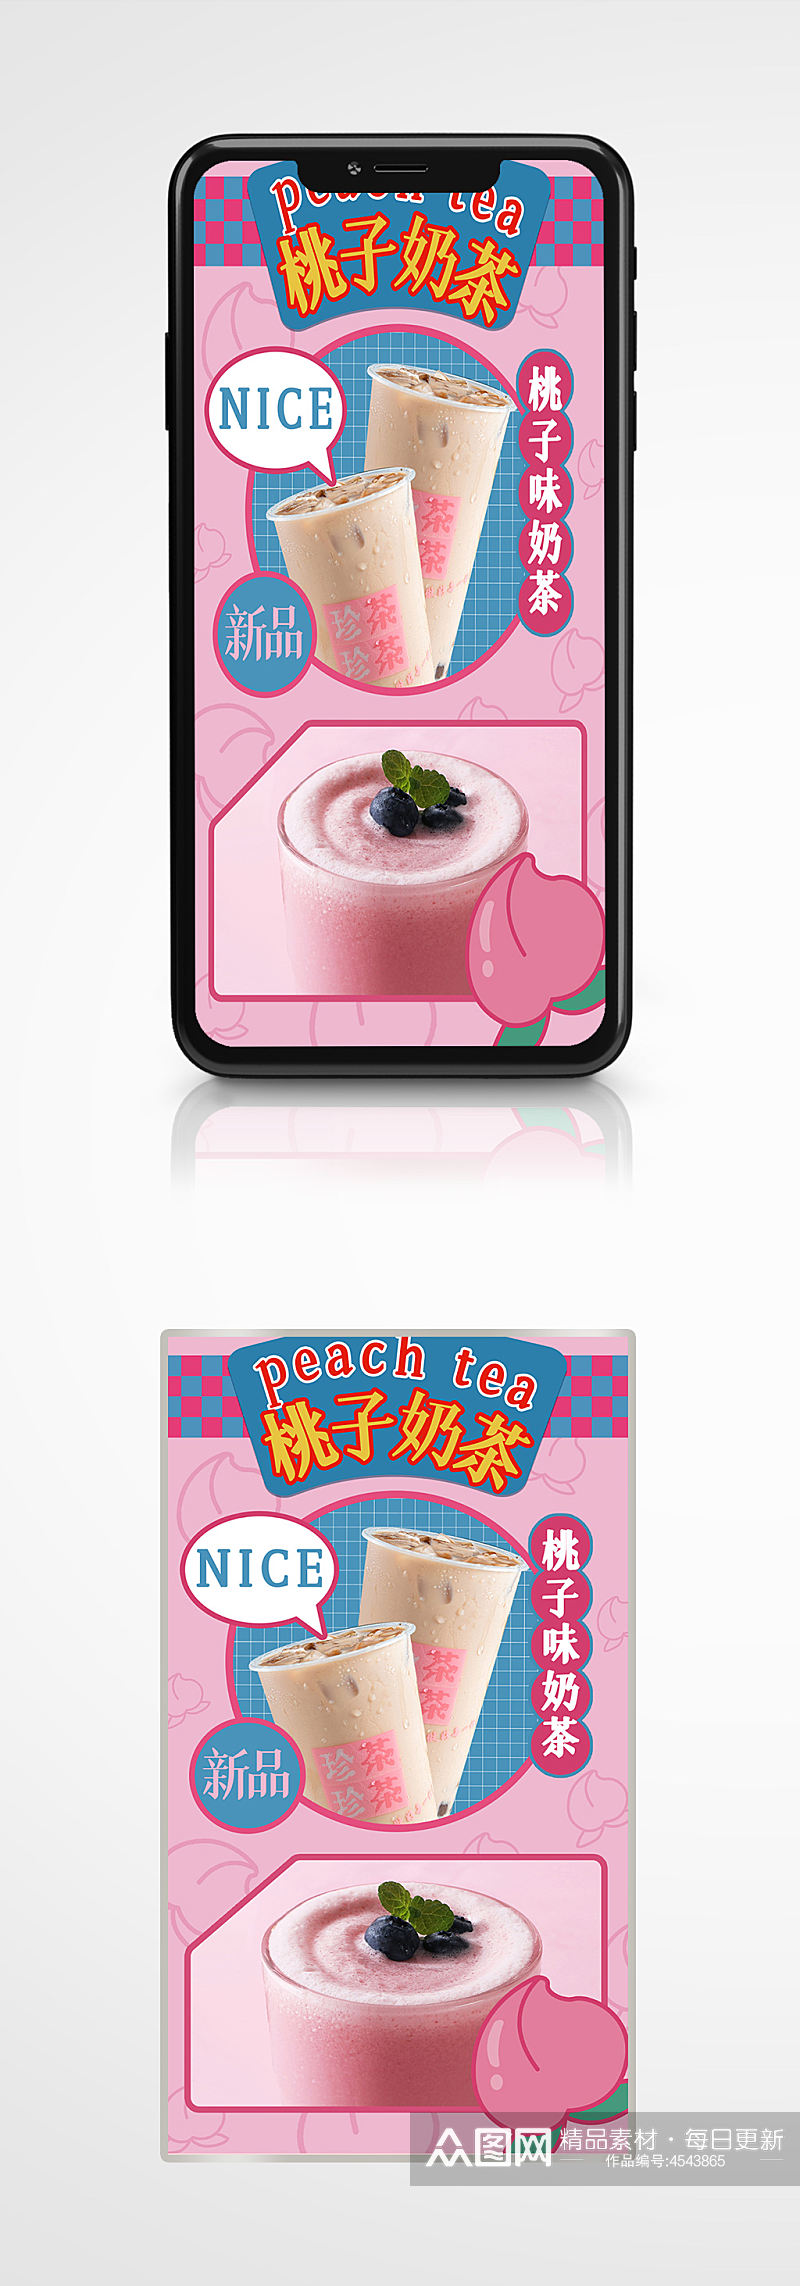 美食奶茶节日新品促销宣传手机长图海报素材